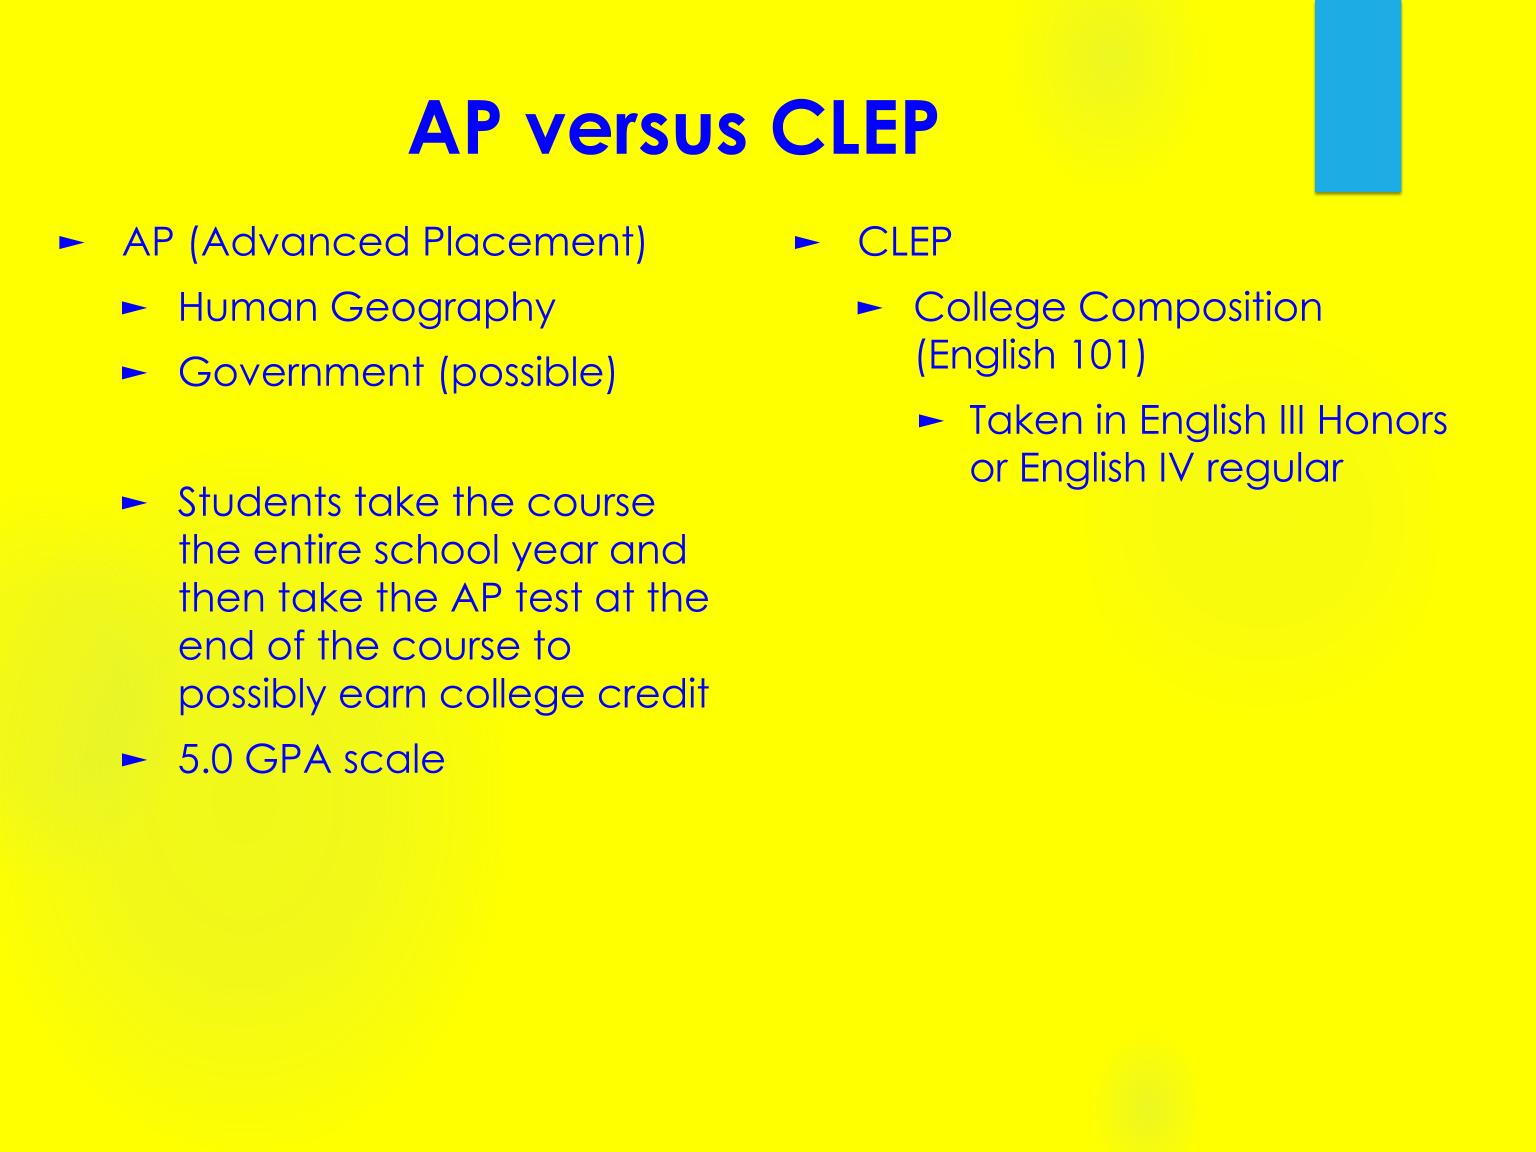 AP Versus CLEP